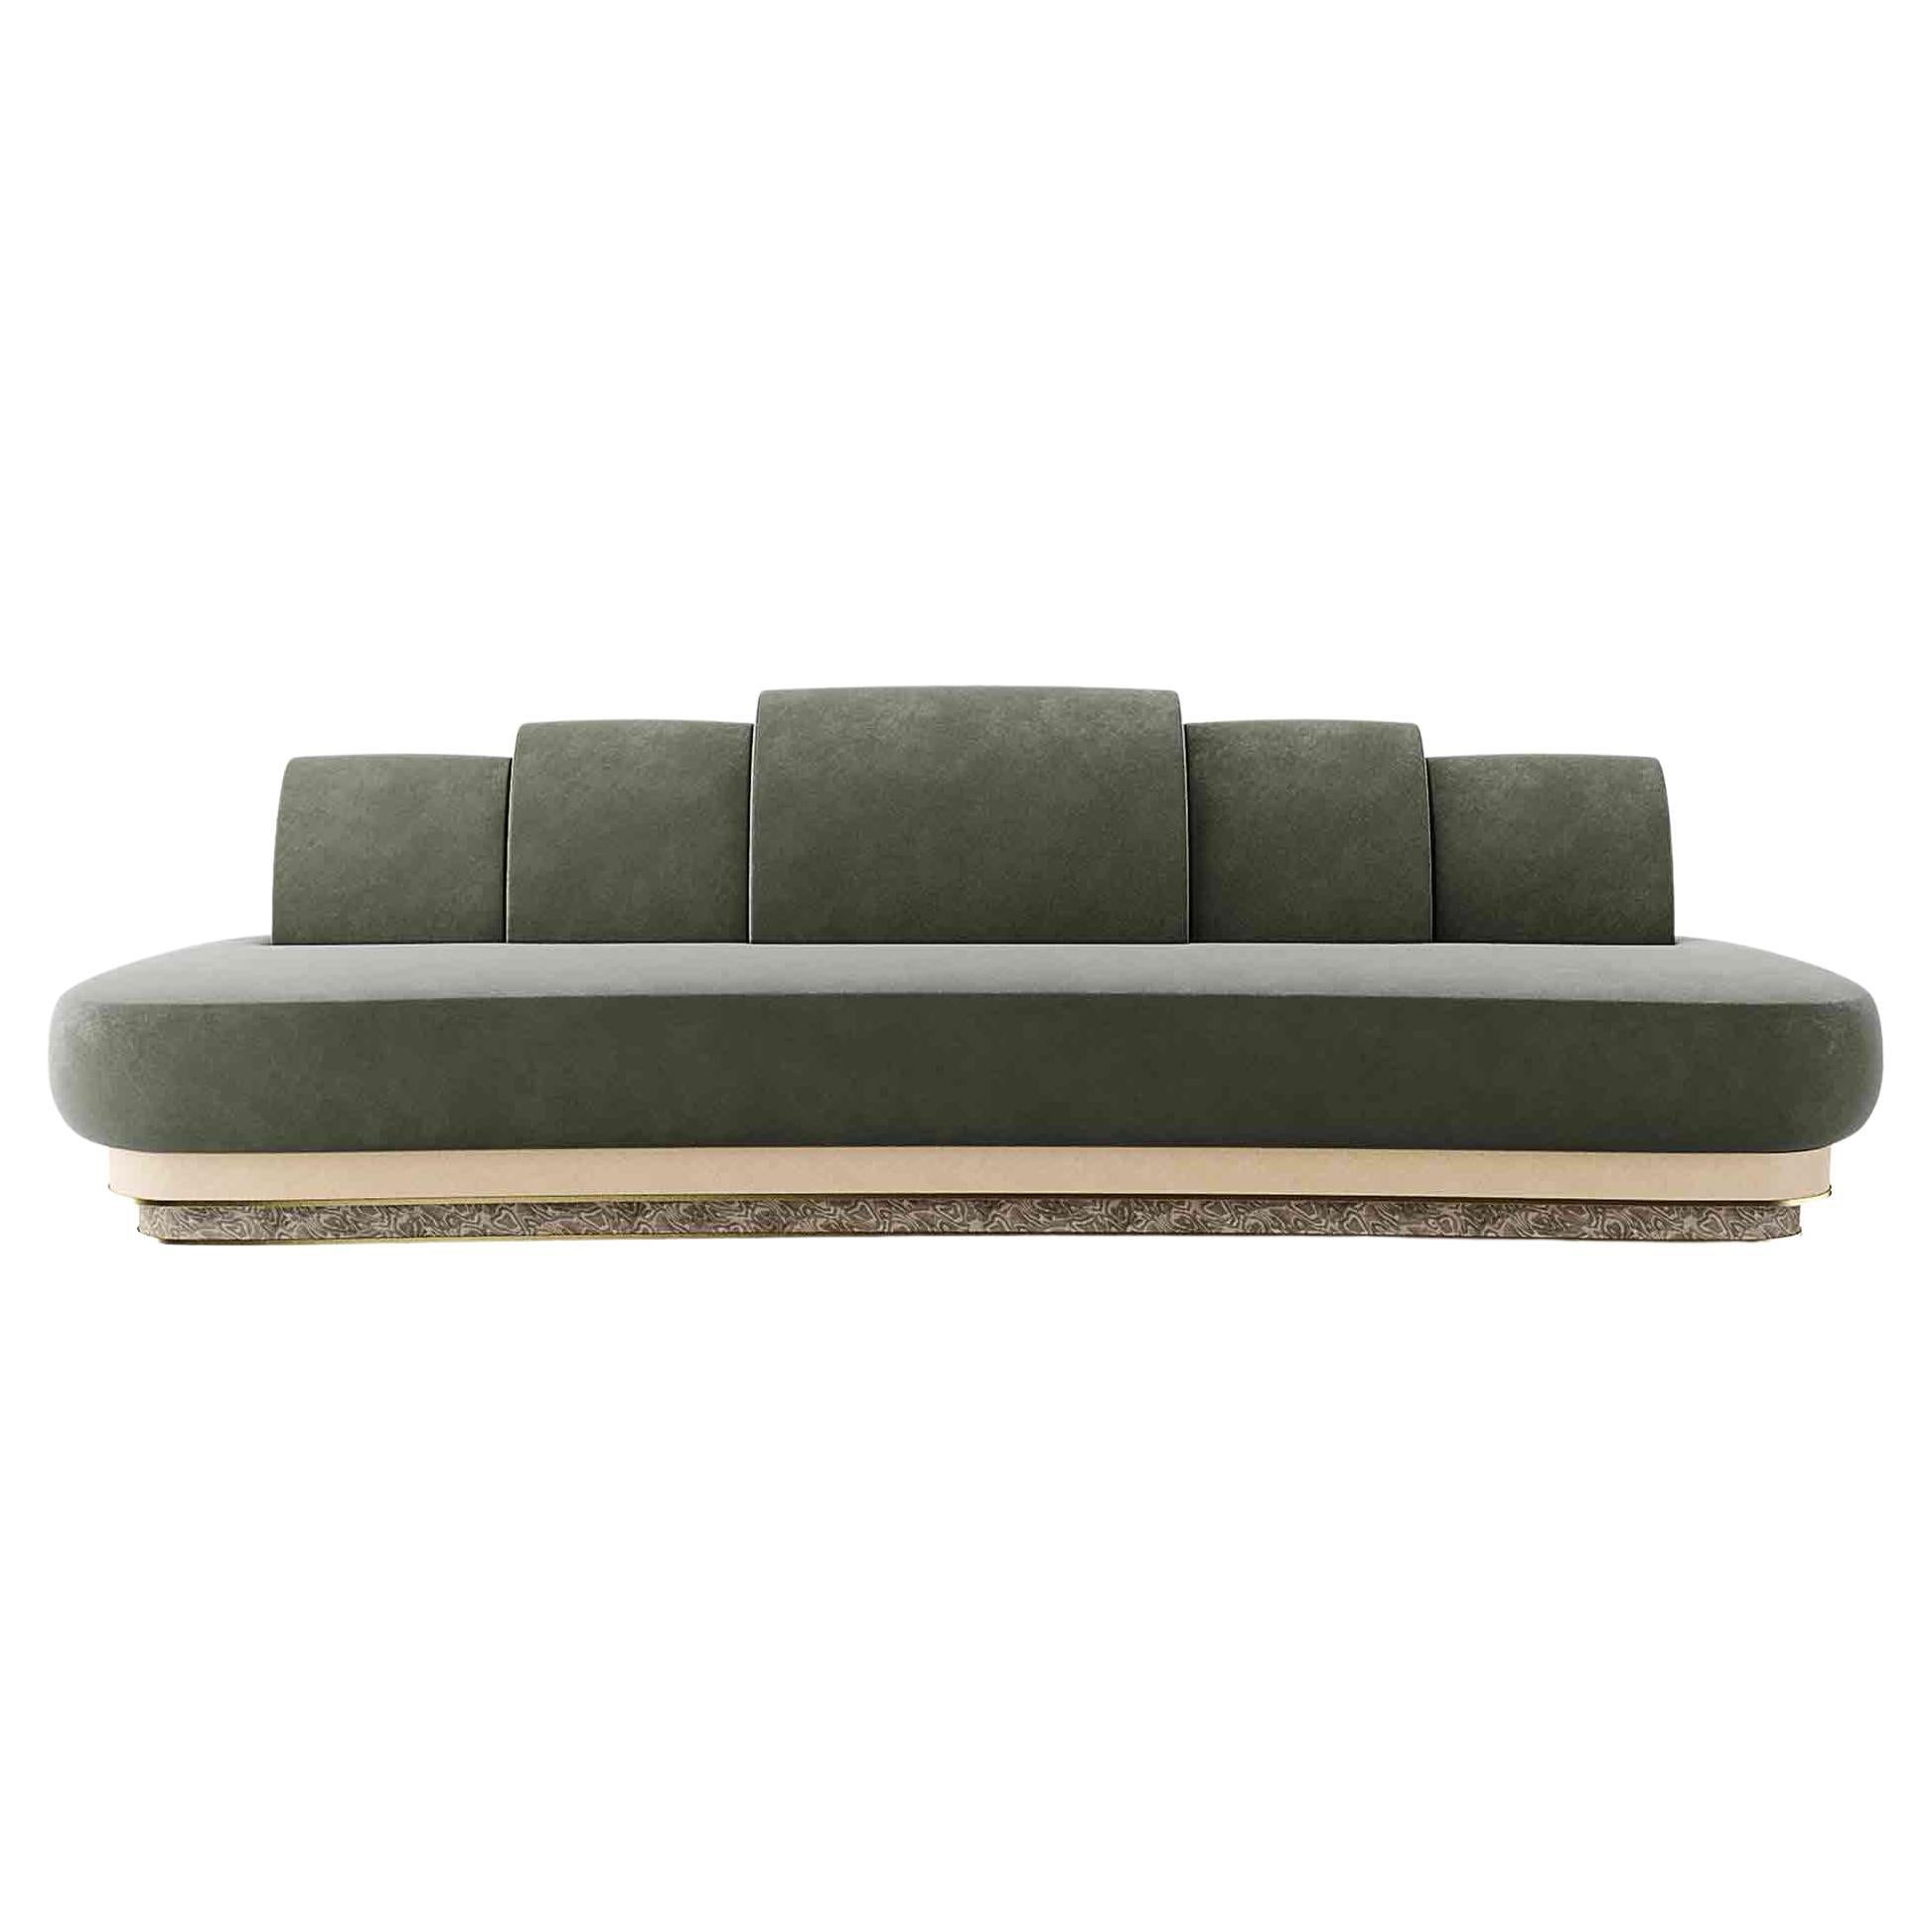 Modernes Sofa in geschwungener Form mit Samtpolsterung, Holzsockel und poliertem Messingdetails